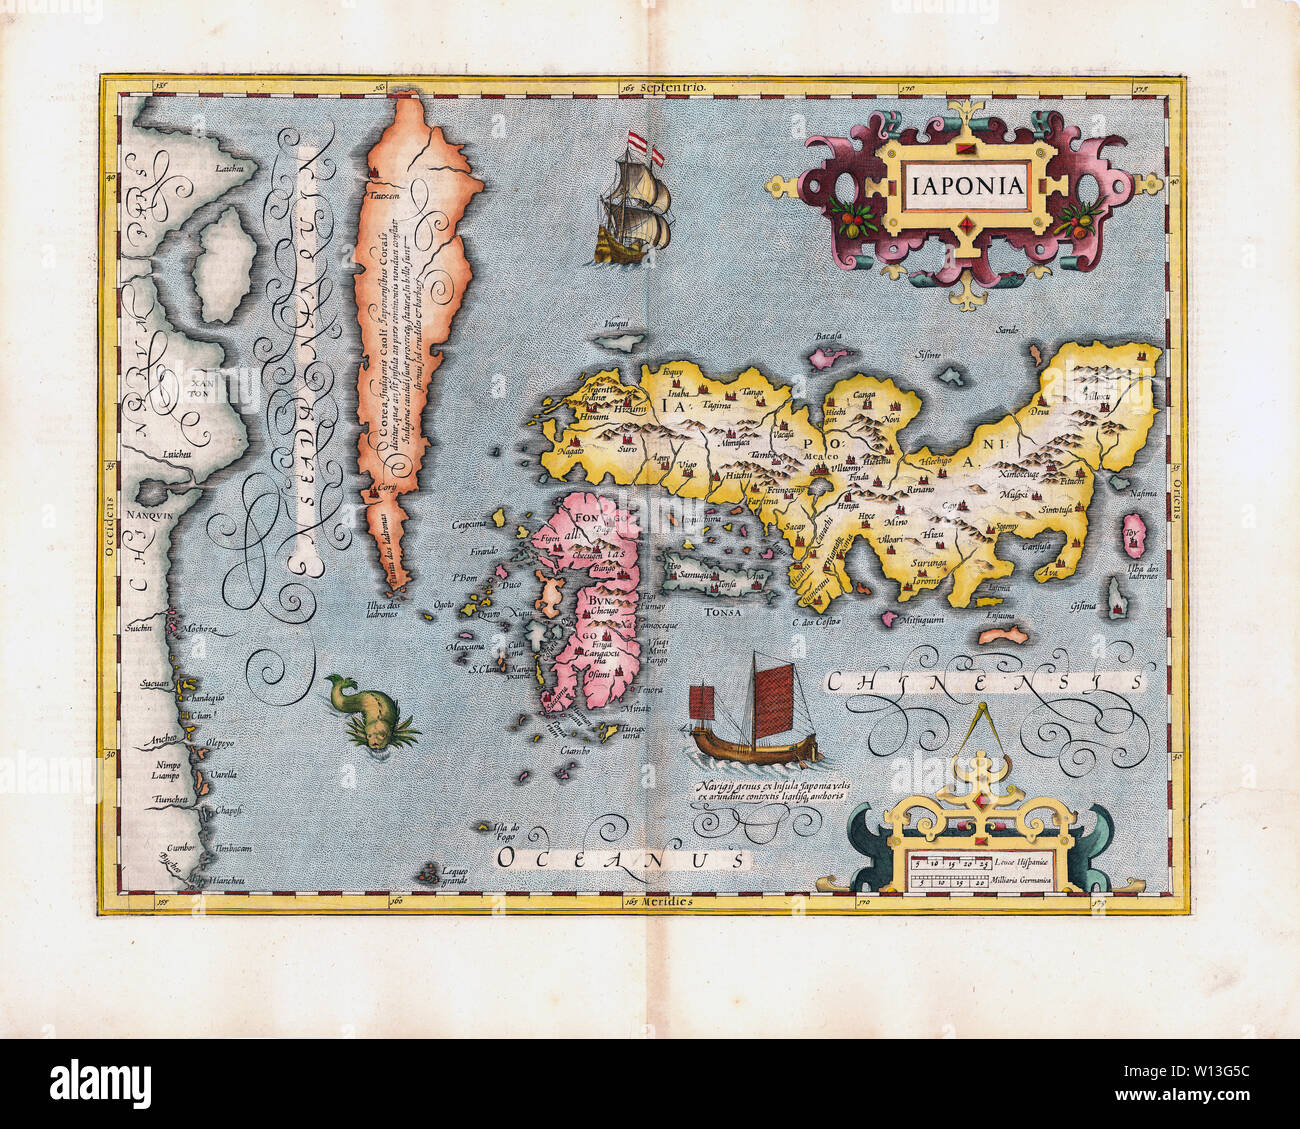 [ 1600 Japón - Mapa de Japón y Corea ] - Iaponia. Mano de color cobre-grabado el mapa de Japón c1606 por Gerardus Mercator (1512-1594) y de Jodocus Hondius (1563-1612). Corea está todavía creía que era una isla. Este mapa es considerado un hito en la cartografía de Japón. Vintage del siglo xvii grabado. Foto de stock